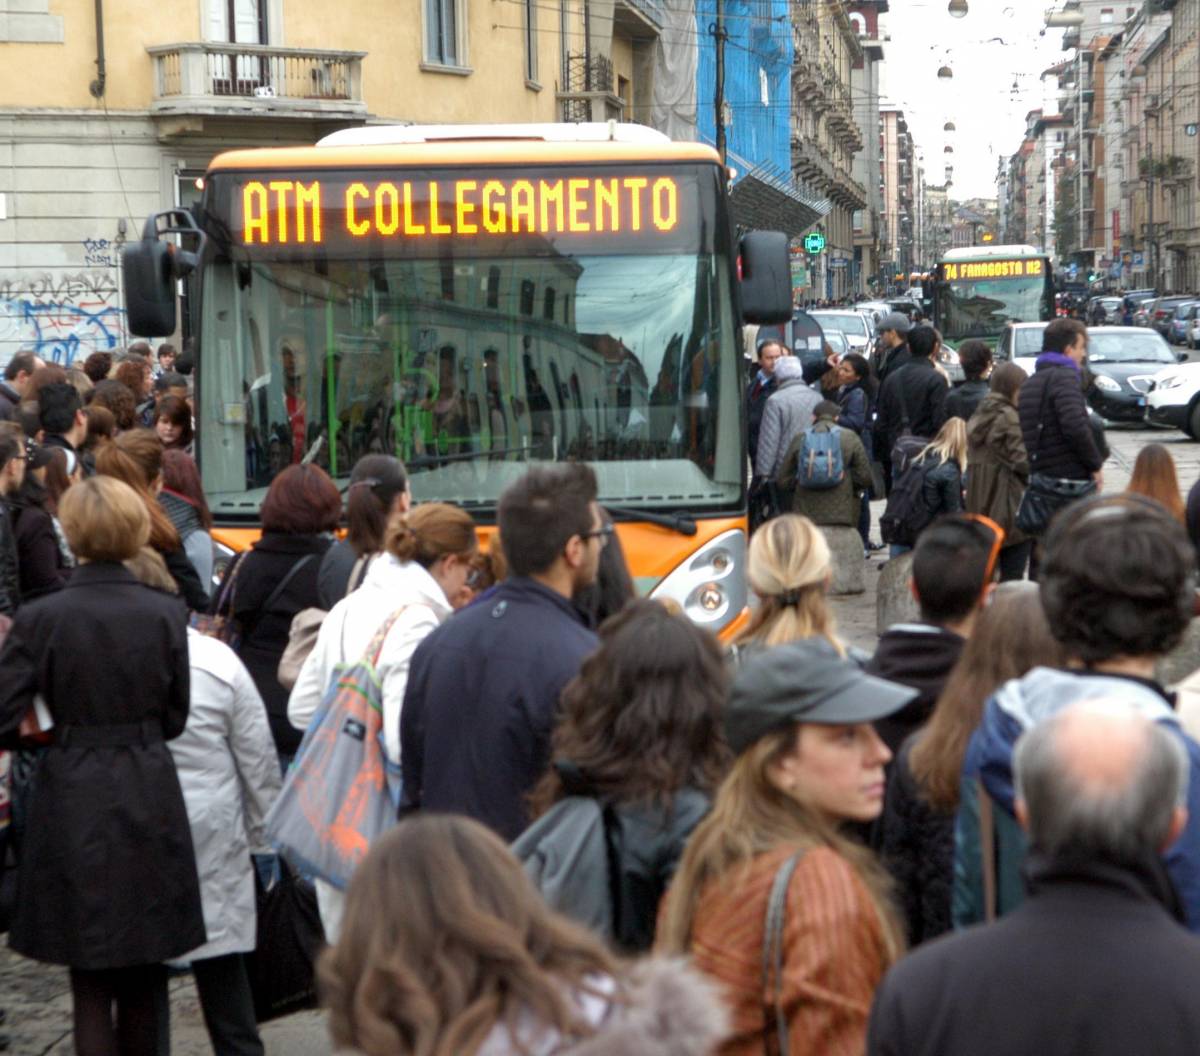 Scioperi, cortei e metrò bloccata: Milano nel caos